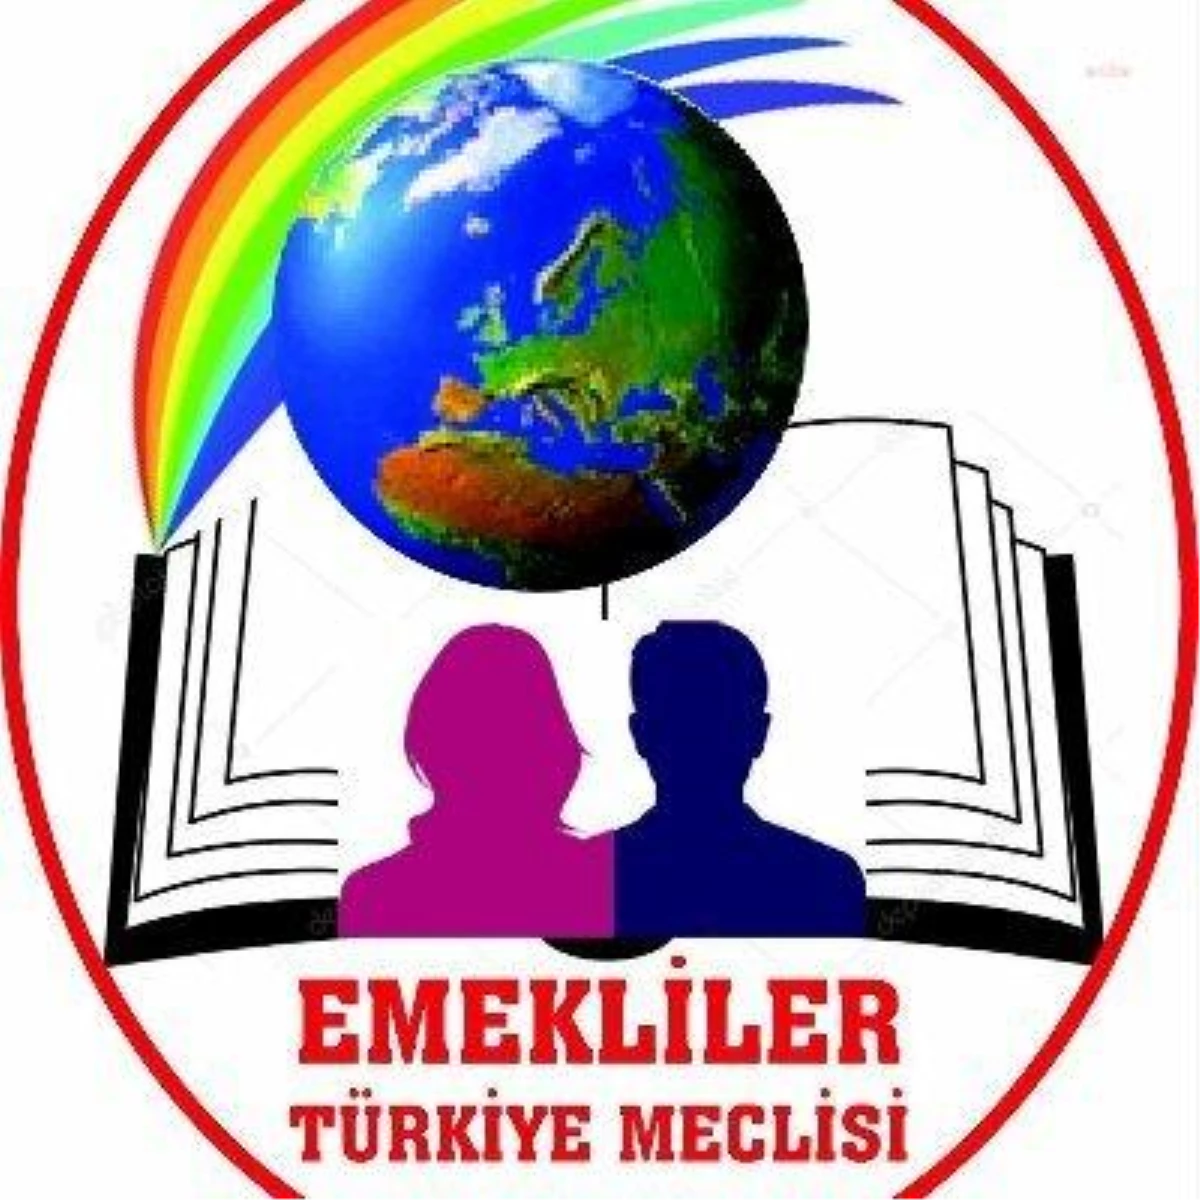 Emekliler Türkiye Meclisi Kuruldu: "Biz Ülke ve Dünya Sendikal Hareketi ve Demokrasi Mücadelesinde Tamamen Yeni Bir Patika Açıyoruz"